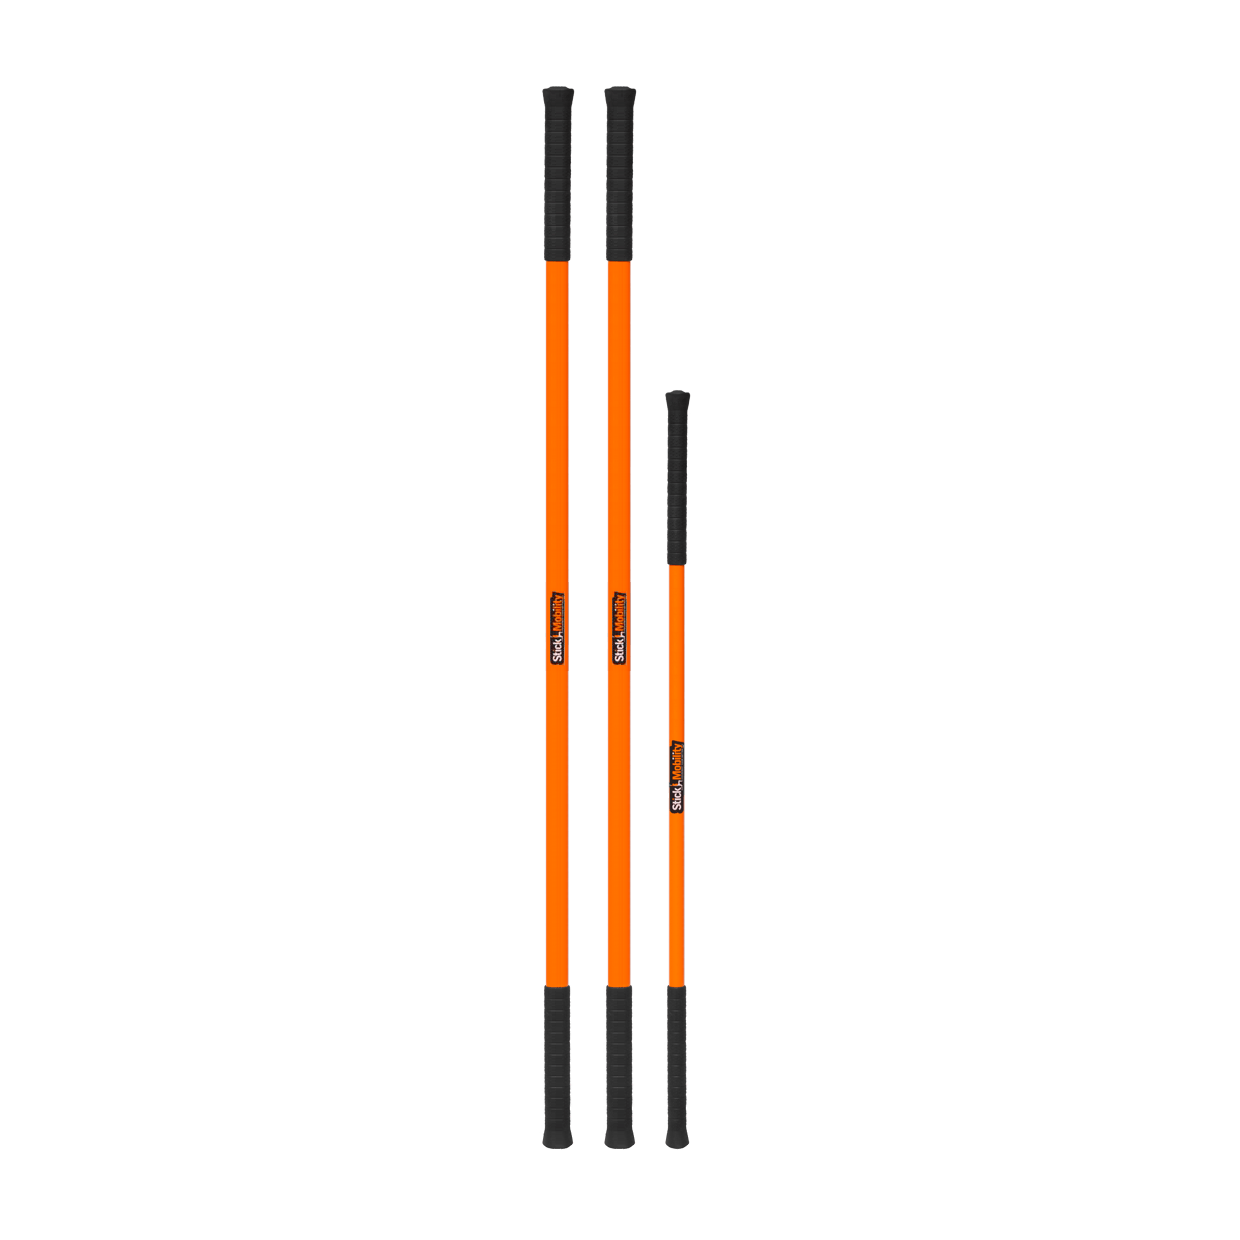 Heavy Duty Stick Bundles - Stick Mobility US